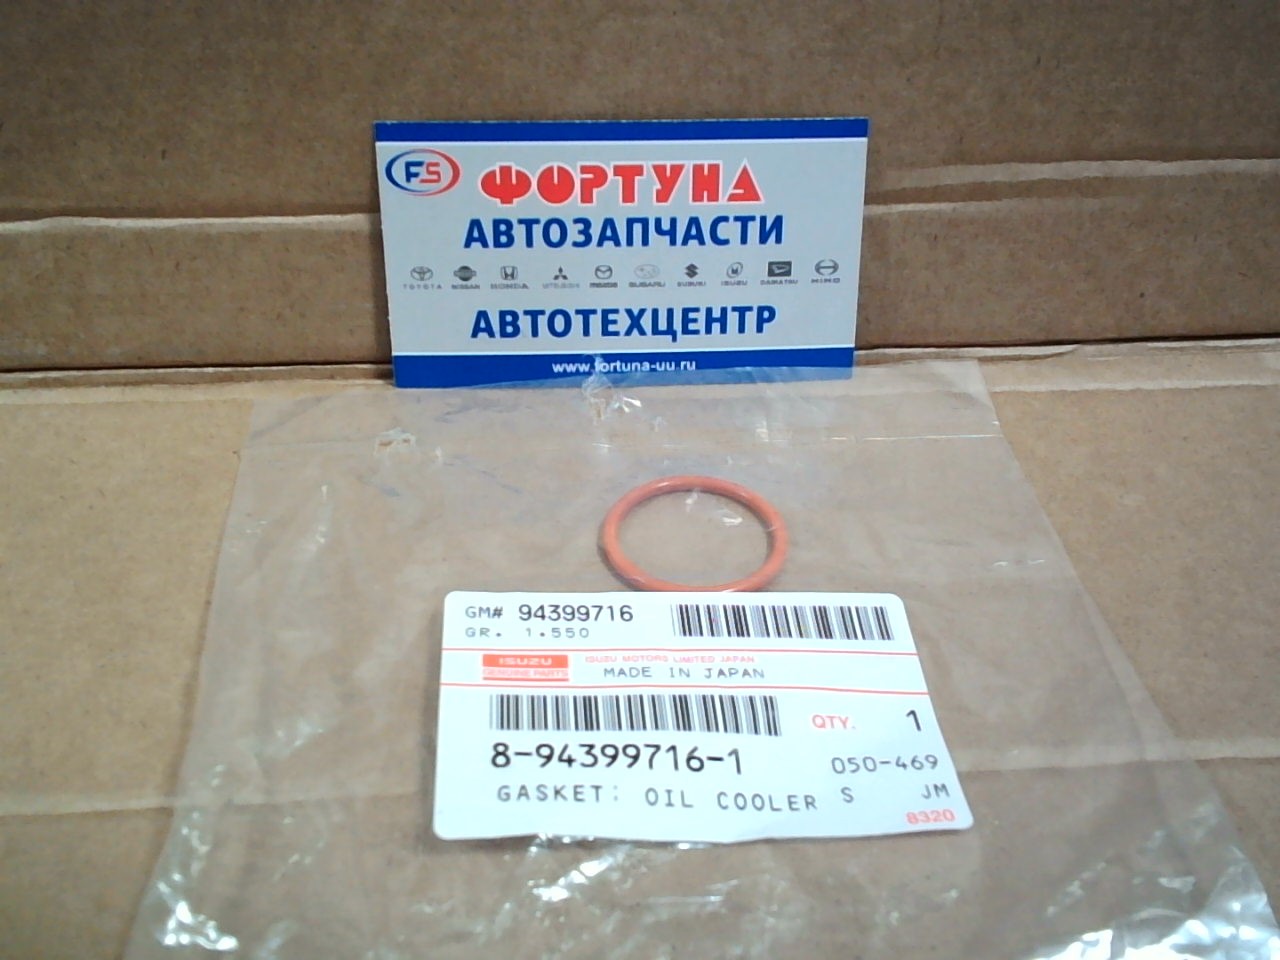 Прокладка теплообменника 8-94399-716-1 ISUZU (резиновое кольцо рыжее)/4HF1,4HG1,4HK1/(2шт. на 1 авто) на  